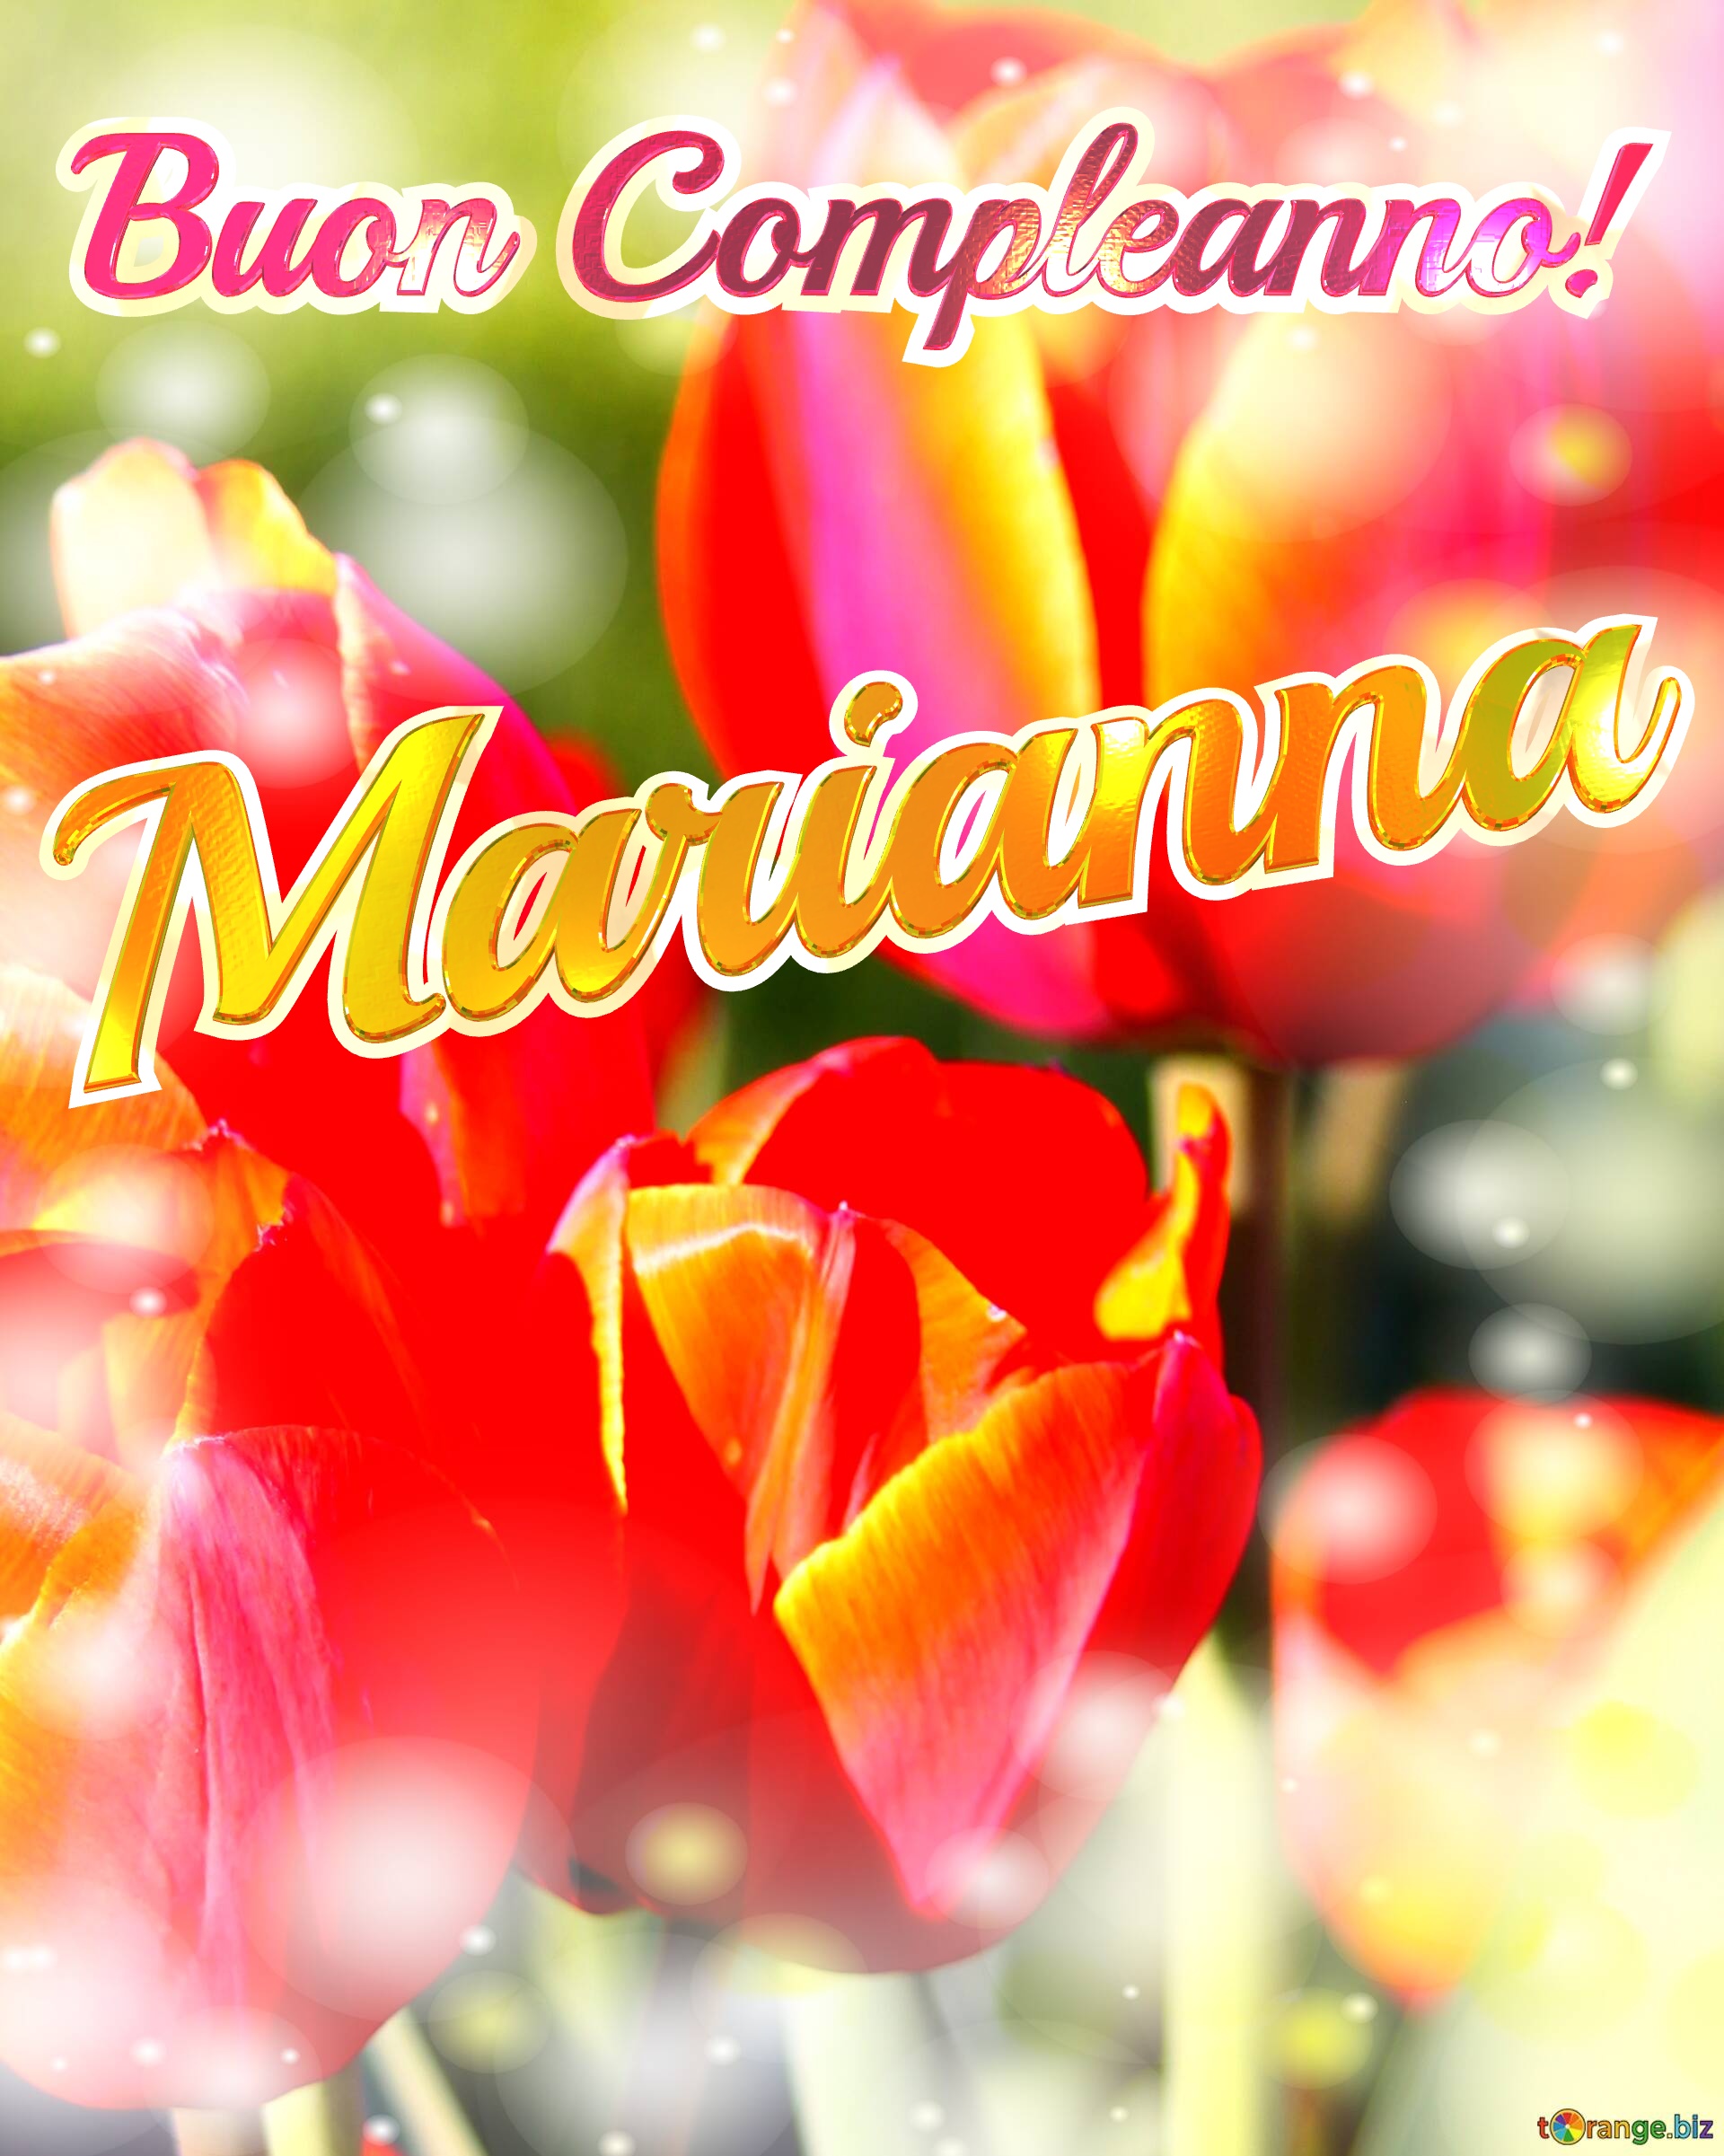 Buon Compleanno! Marianna  La bellezza dei tulipani è un richiamo alla bellezza della vita, auguri per una vita piena di bellezza e soddisfazione. №0